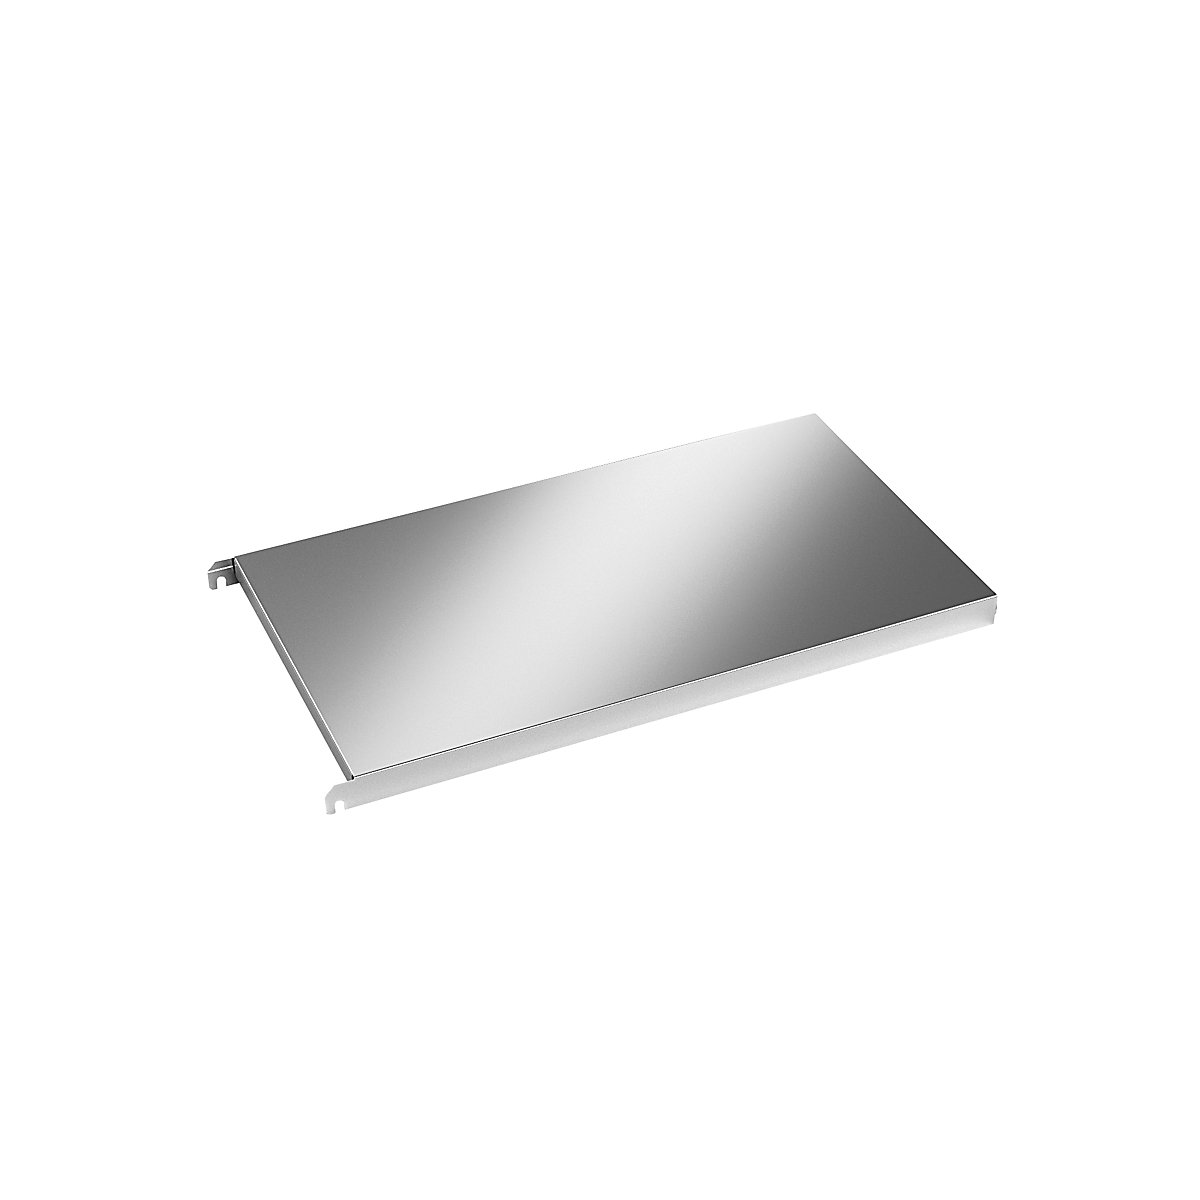 Stainless steel shelf, smooth corner shelf, WxD 740 x 440 mm